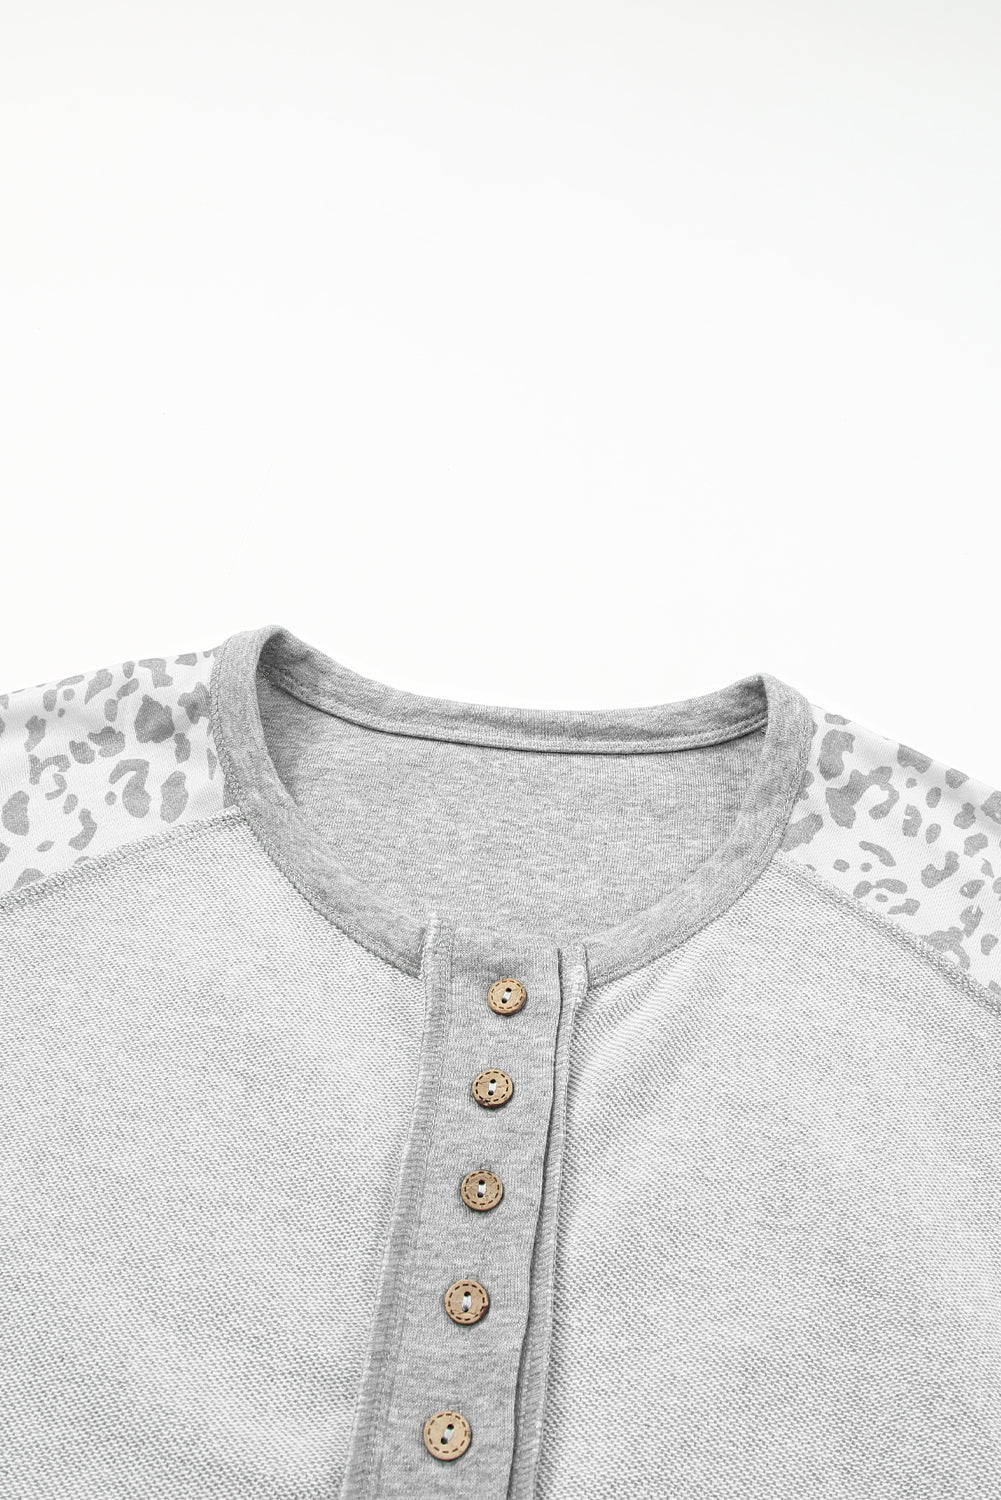 Sweat-shirt gris à col boutonné et coutures apparentes en patchwork léopard